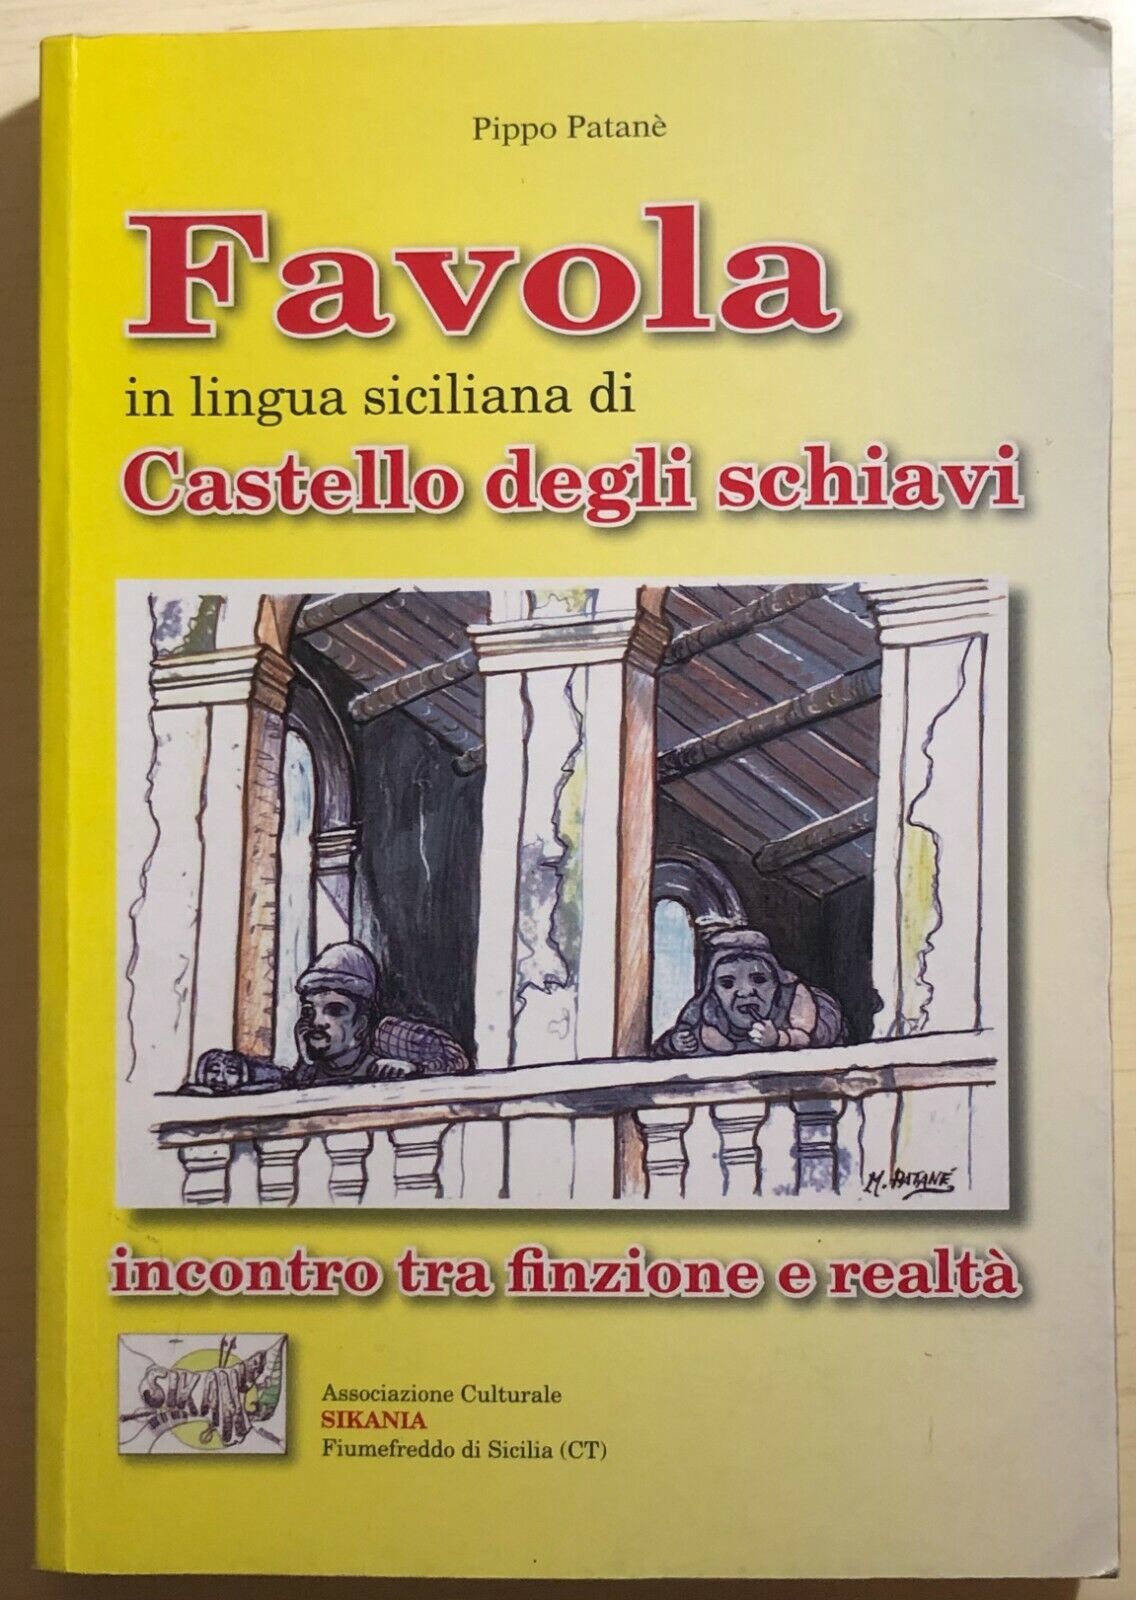 Favola in lingua siciliana di Castello degli schiavi di Pippo Patan?,  2006,  As